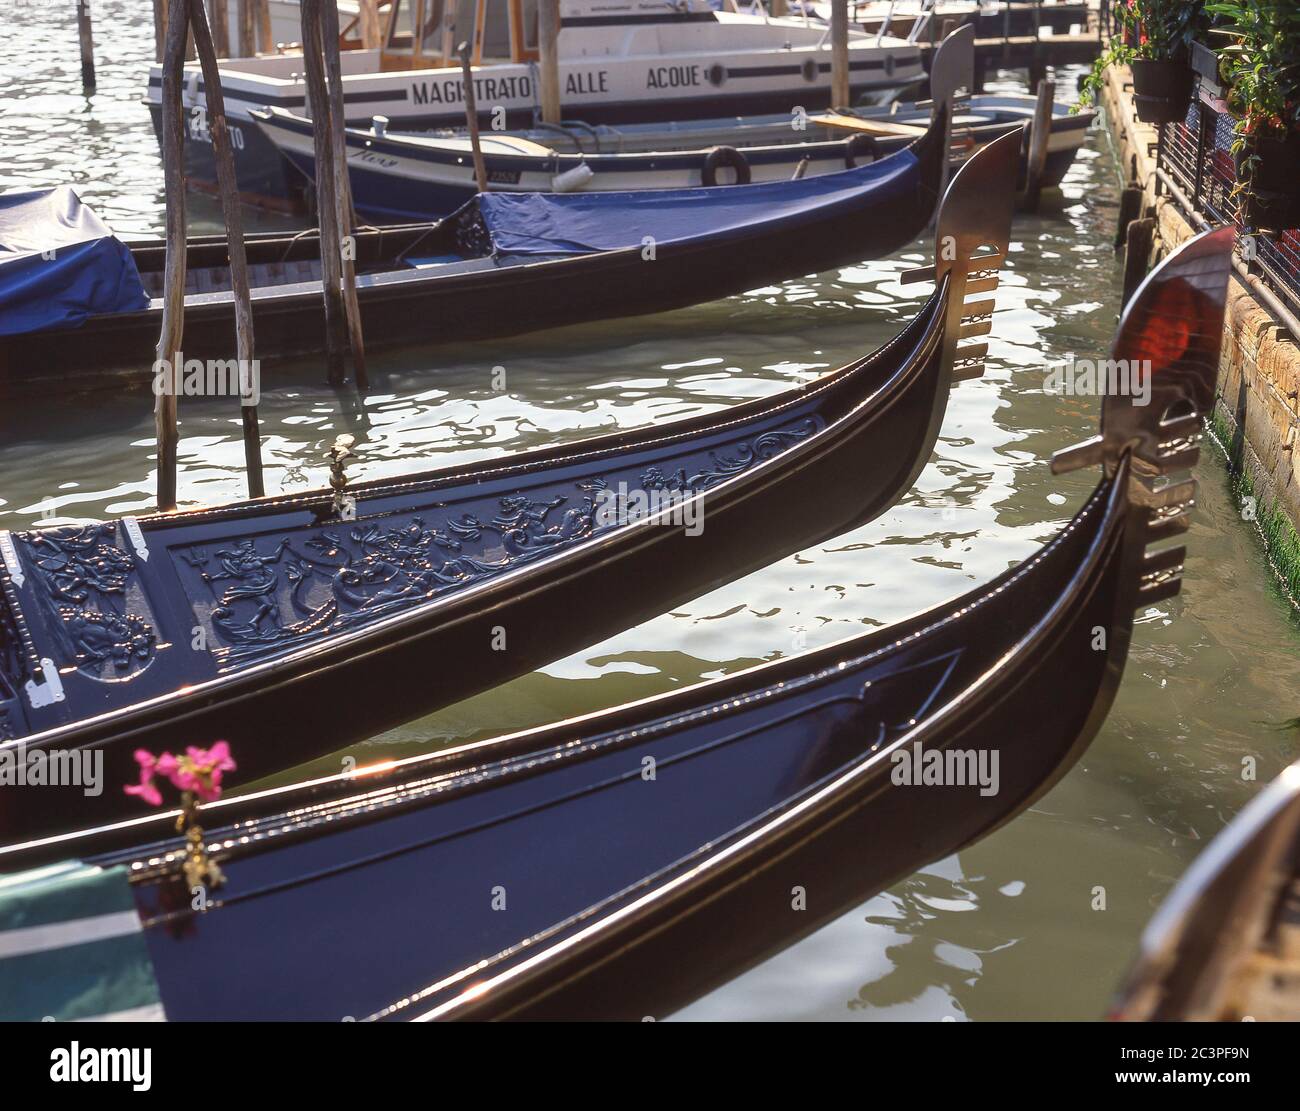 Gondolas on canalside moorings, Grand Canal, Venice (Venezia), Veneto Region, Italy Stock Photo